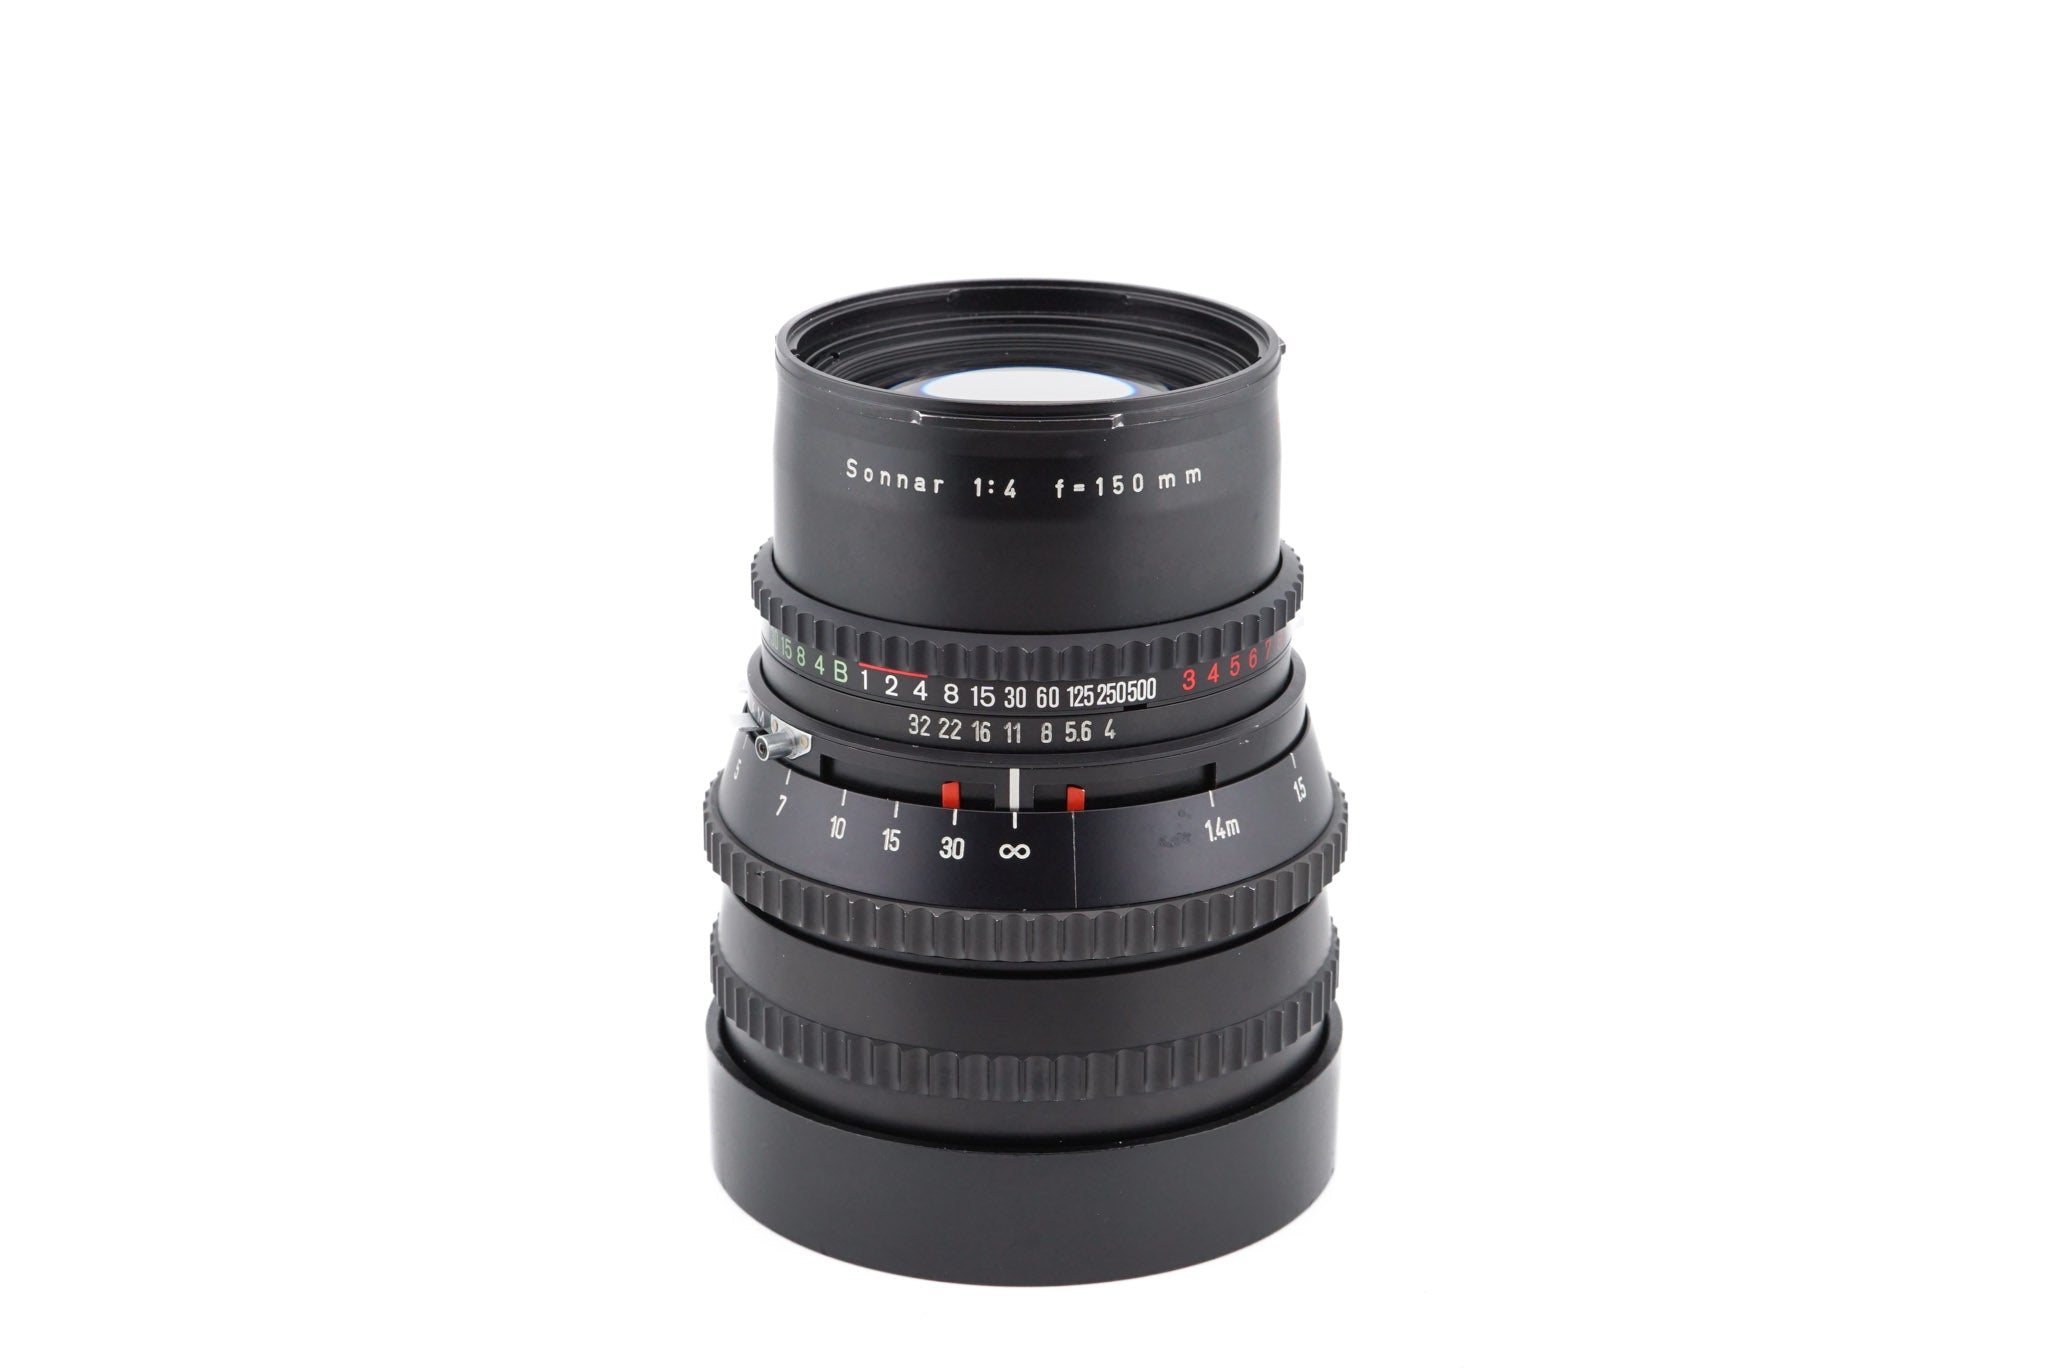 Hasselblad 150mm f4 Sonnar T* C - Lens – Kamerastore